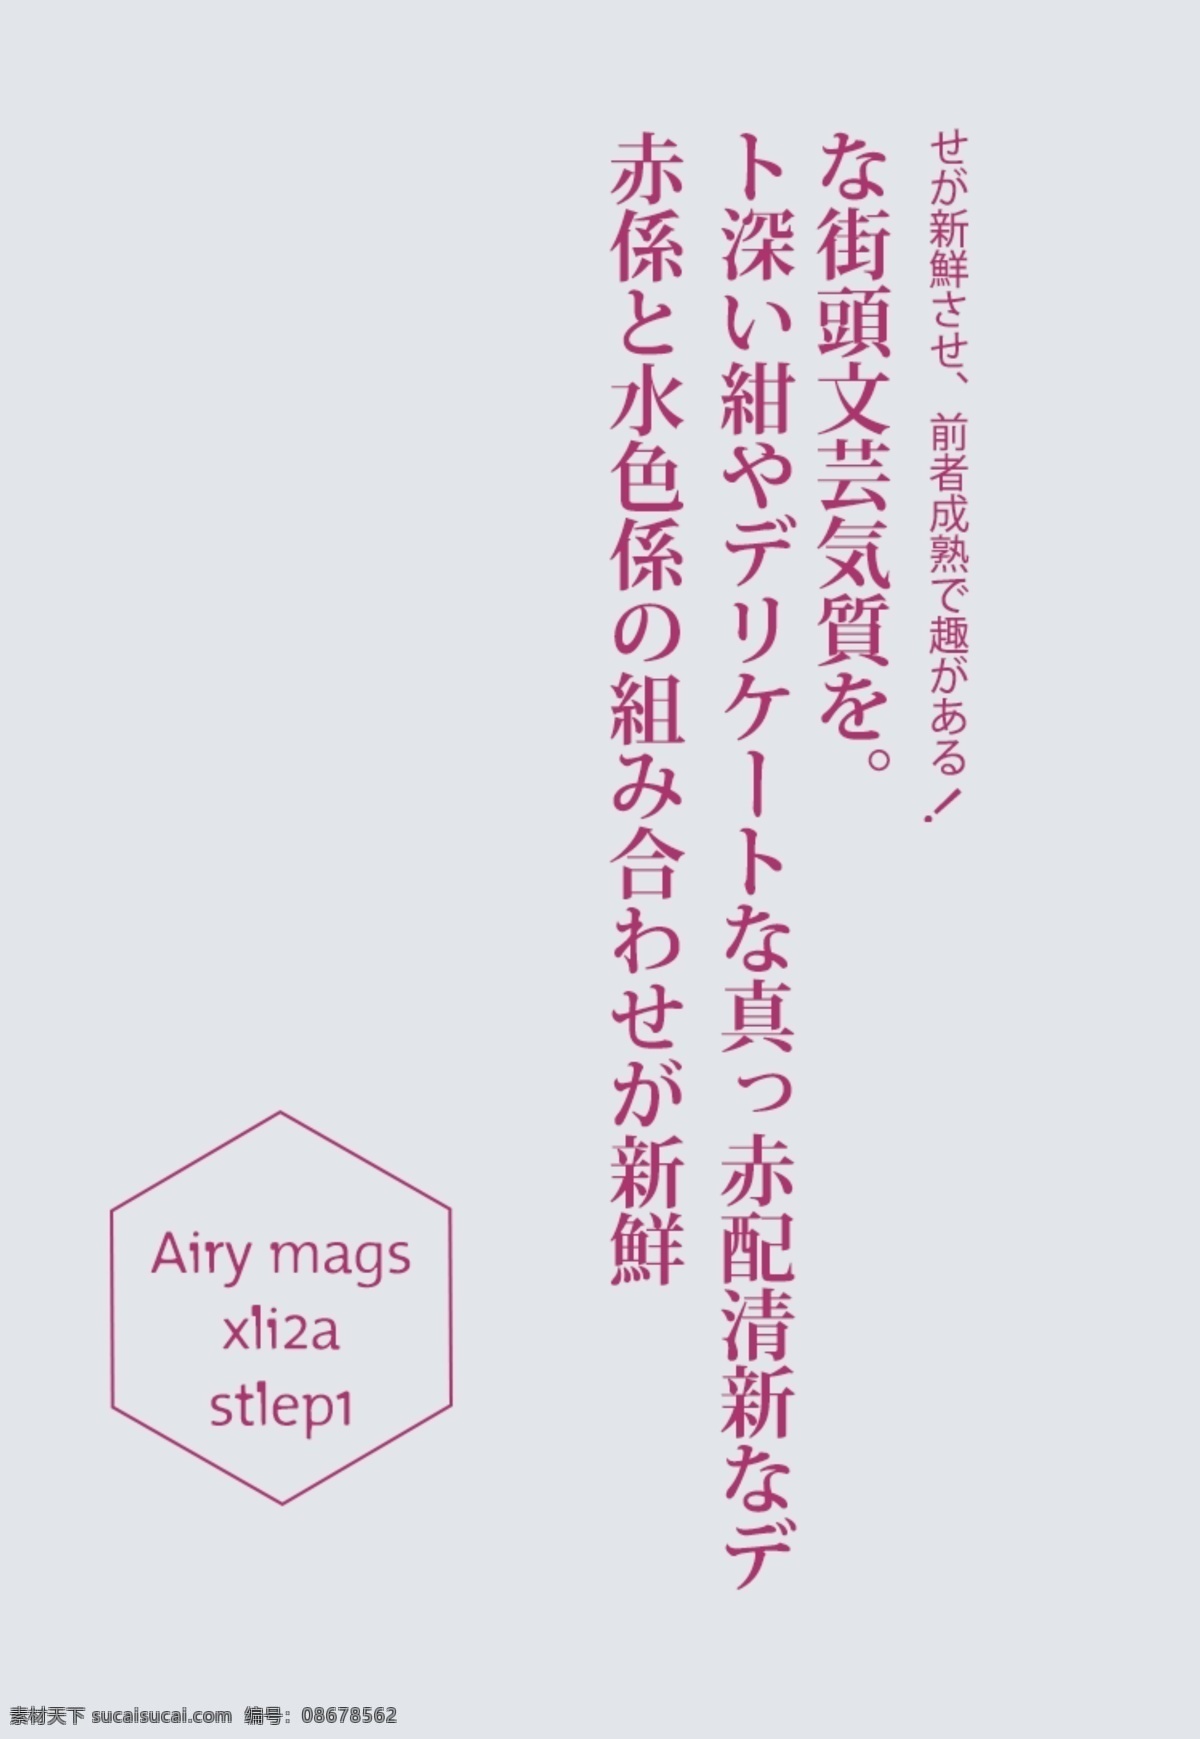 日 系 字体 创意 排版 日文排版 排版样式 日文 文字排版 psd素材 排版设计 日本文字 创意排版 字体设计 杂志排版 封面排版 日系字体排版 日系排版 灰色